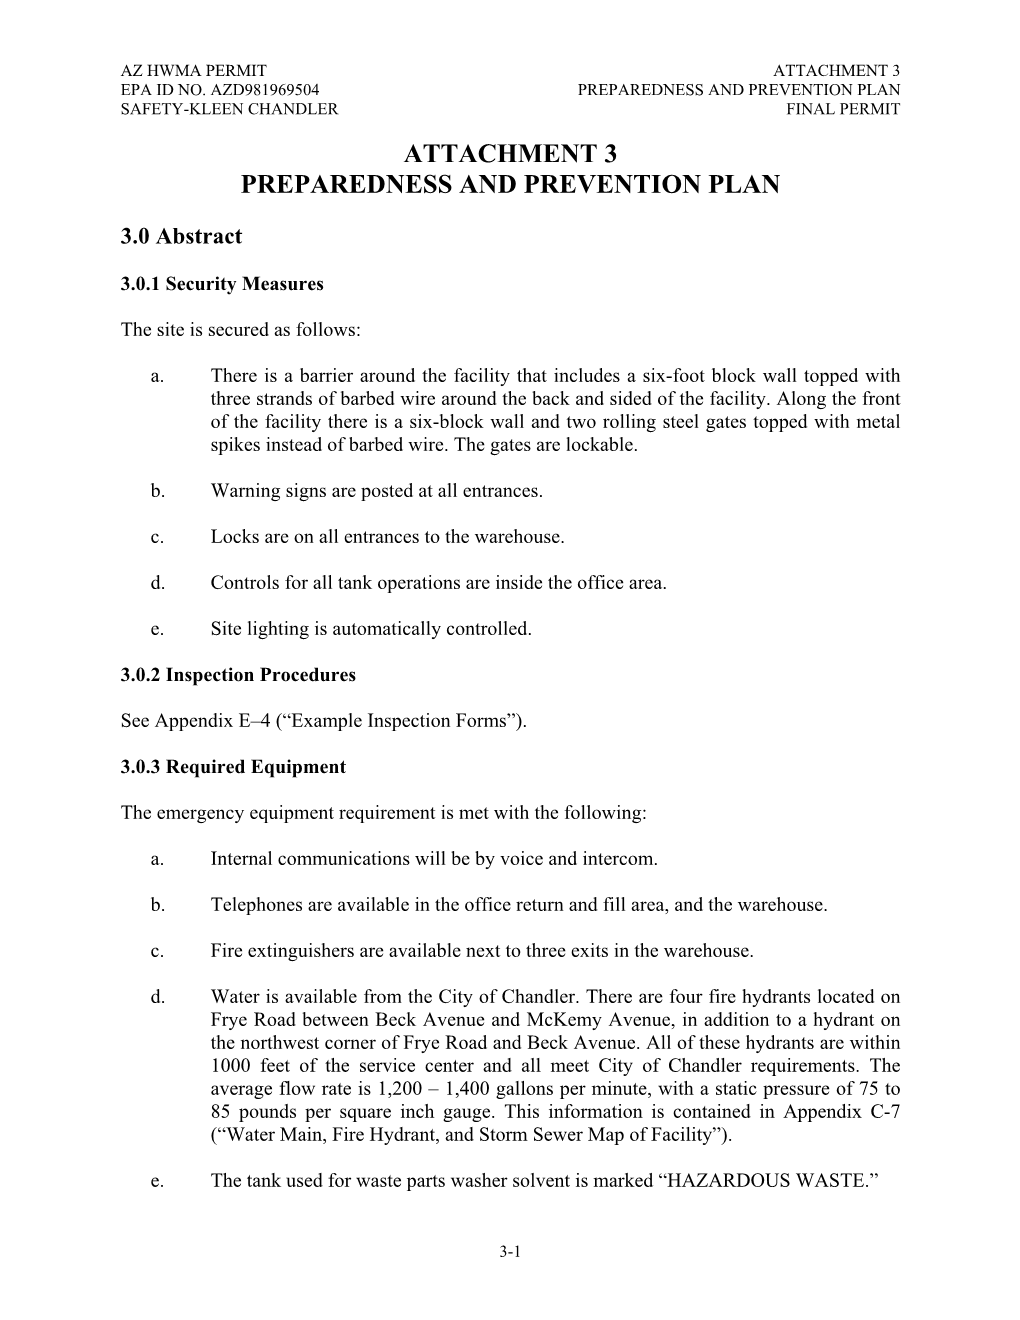 Attachment 3 Preparedness and Prevention Plan